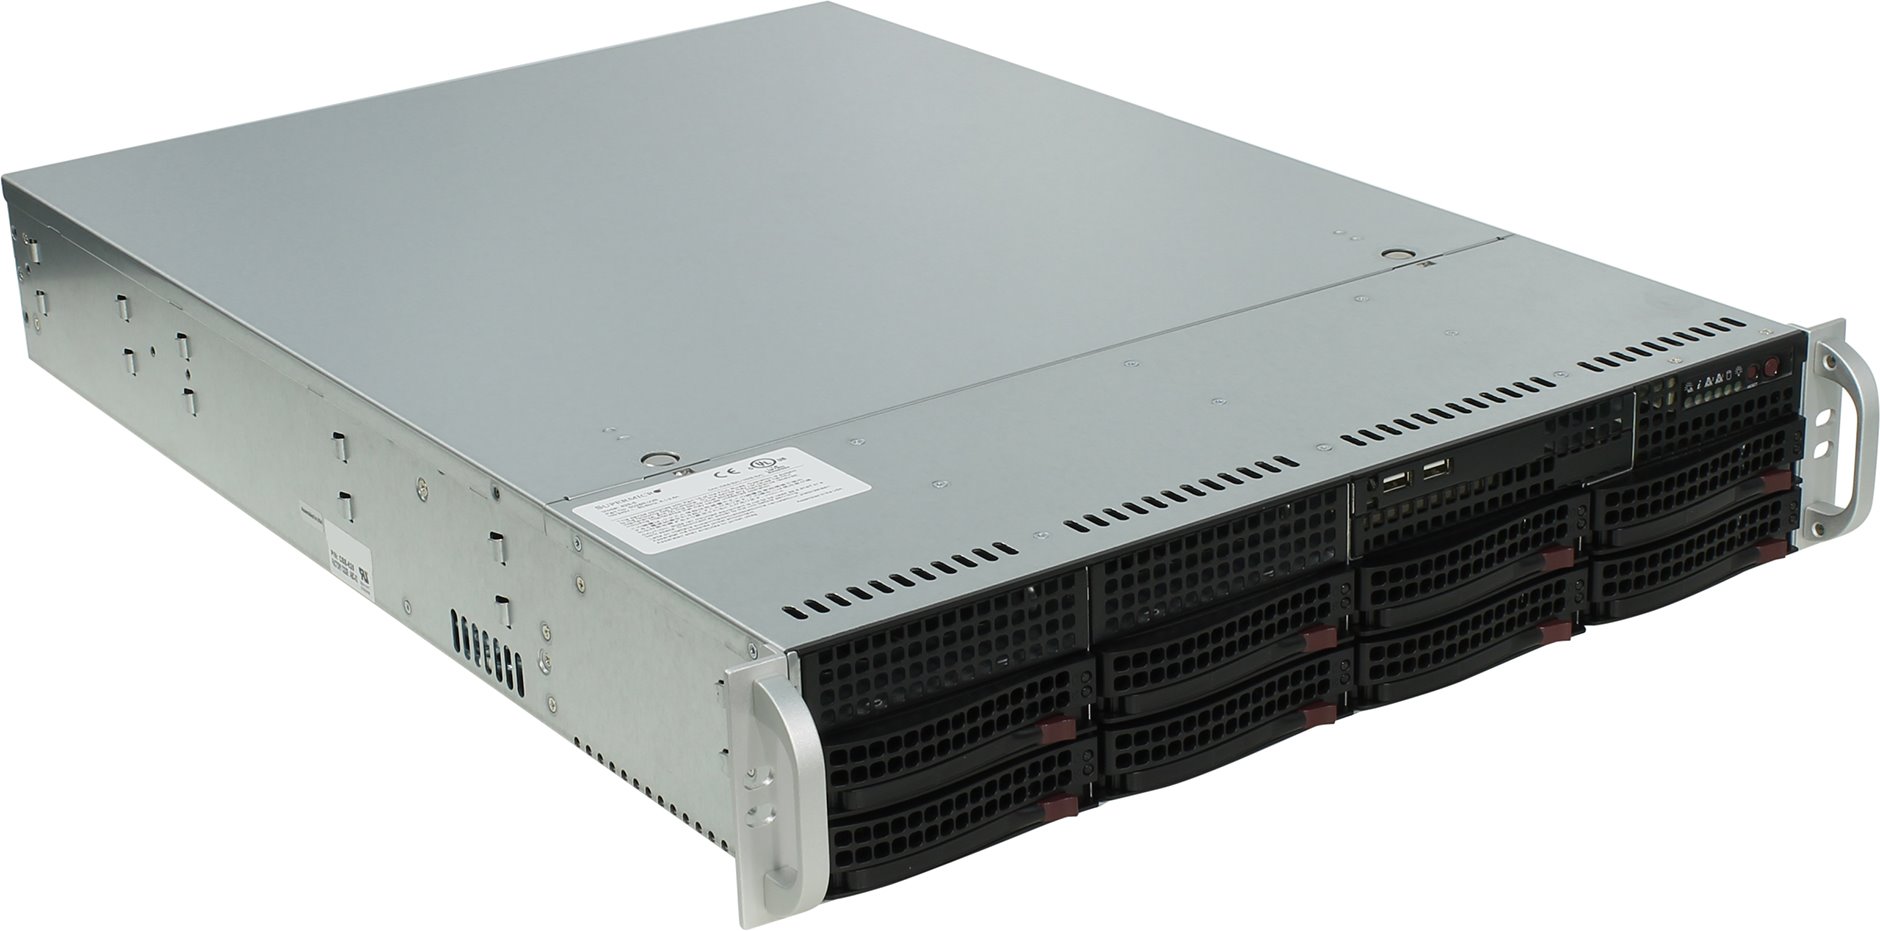 Серверный корпус SuperMicro CSE-825TQ-R500WB, 2U, 12" x 13", E-ATX, 500 Вт, 8x 3.5" Hot-swap SAS / SATA Drive Bays, 2x USB 2.0